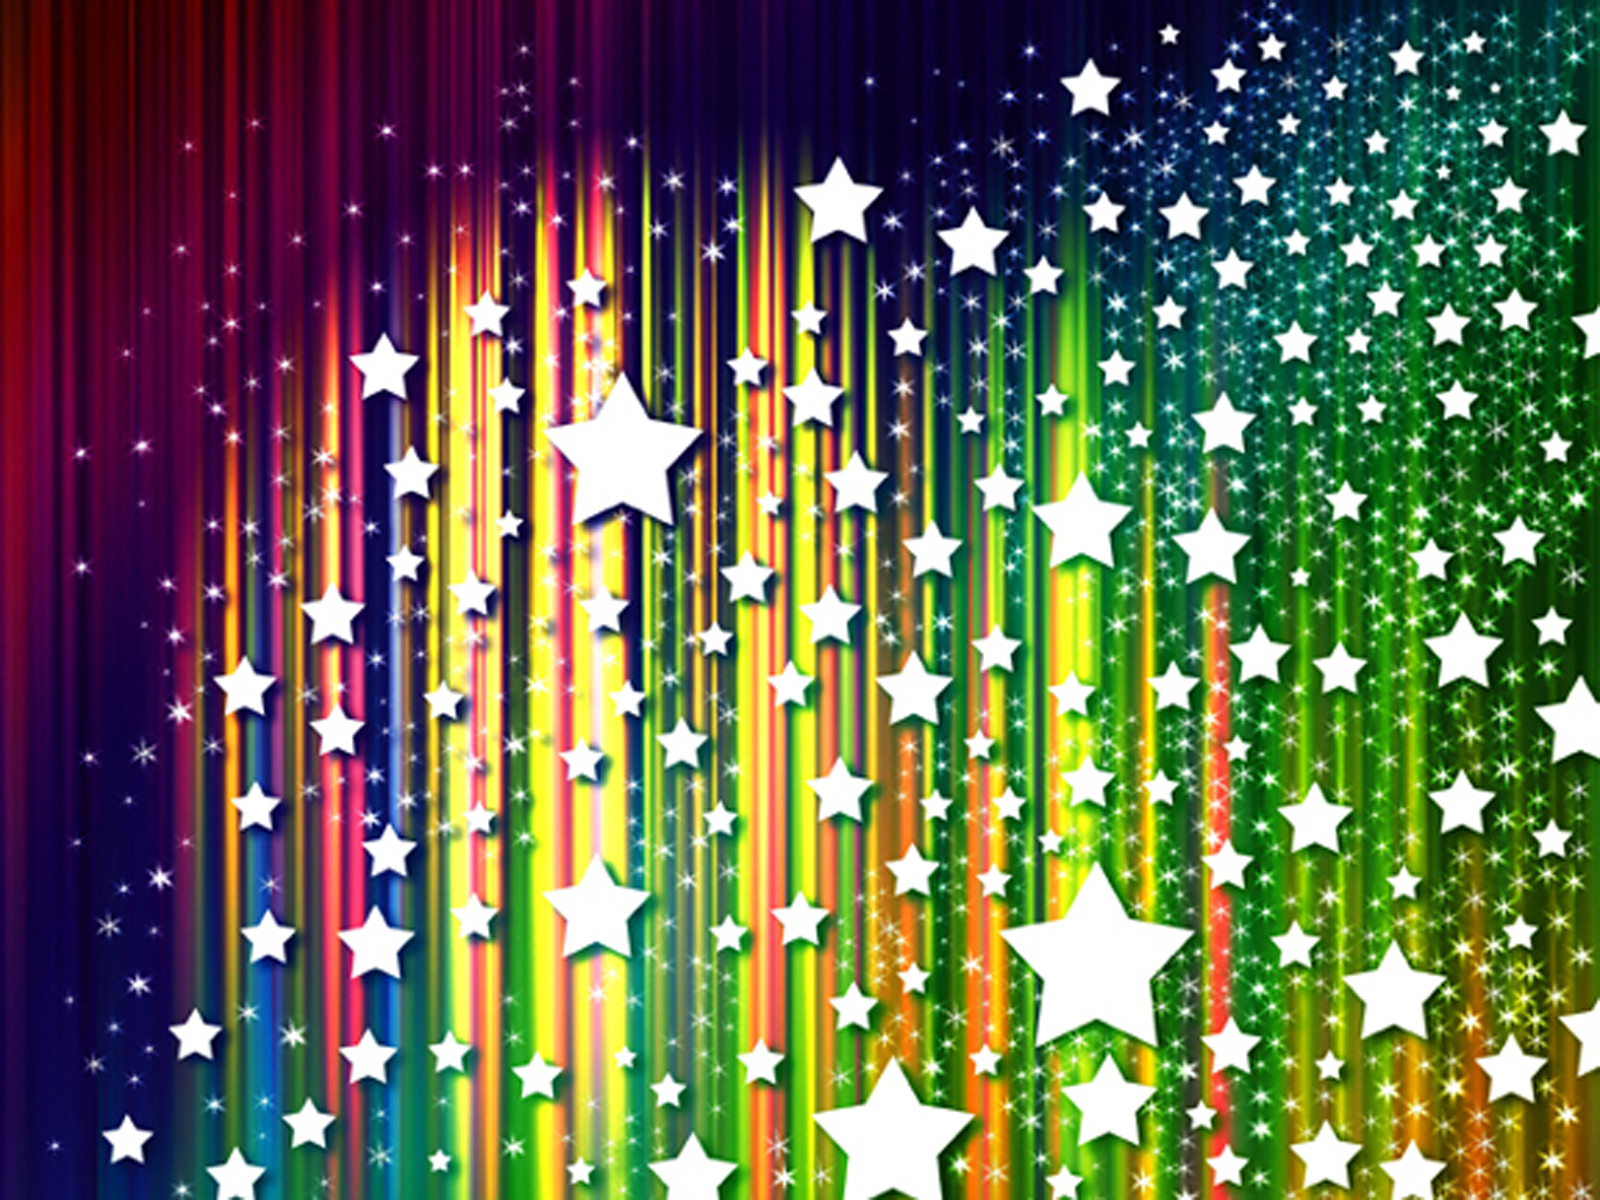 Spot light stars PPT Backgrounds